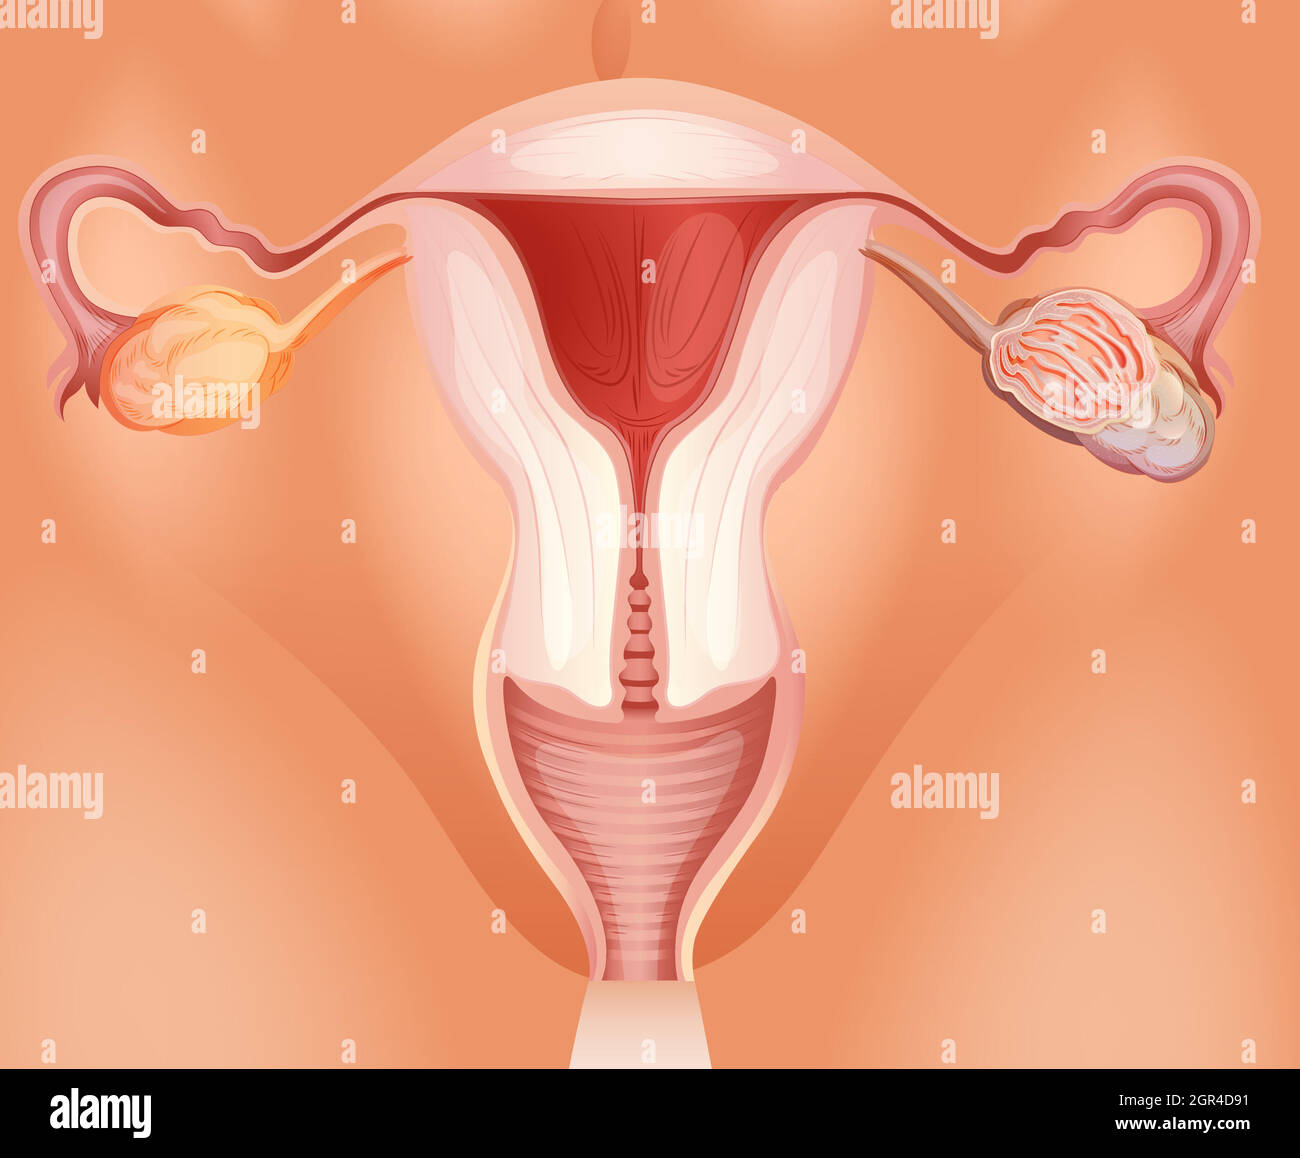 Tumeur ovarienne chez la femme Illustration de Vecteur